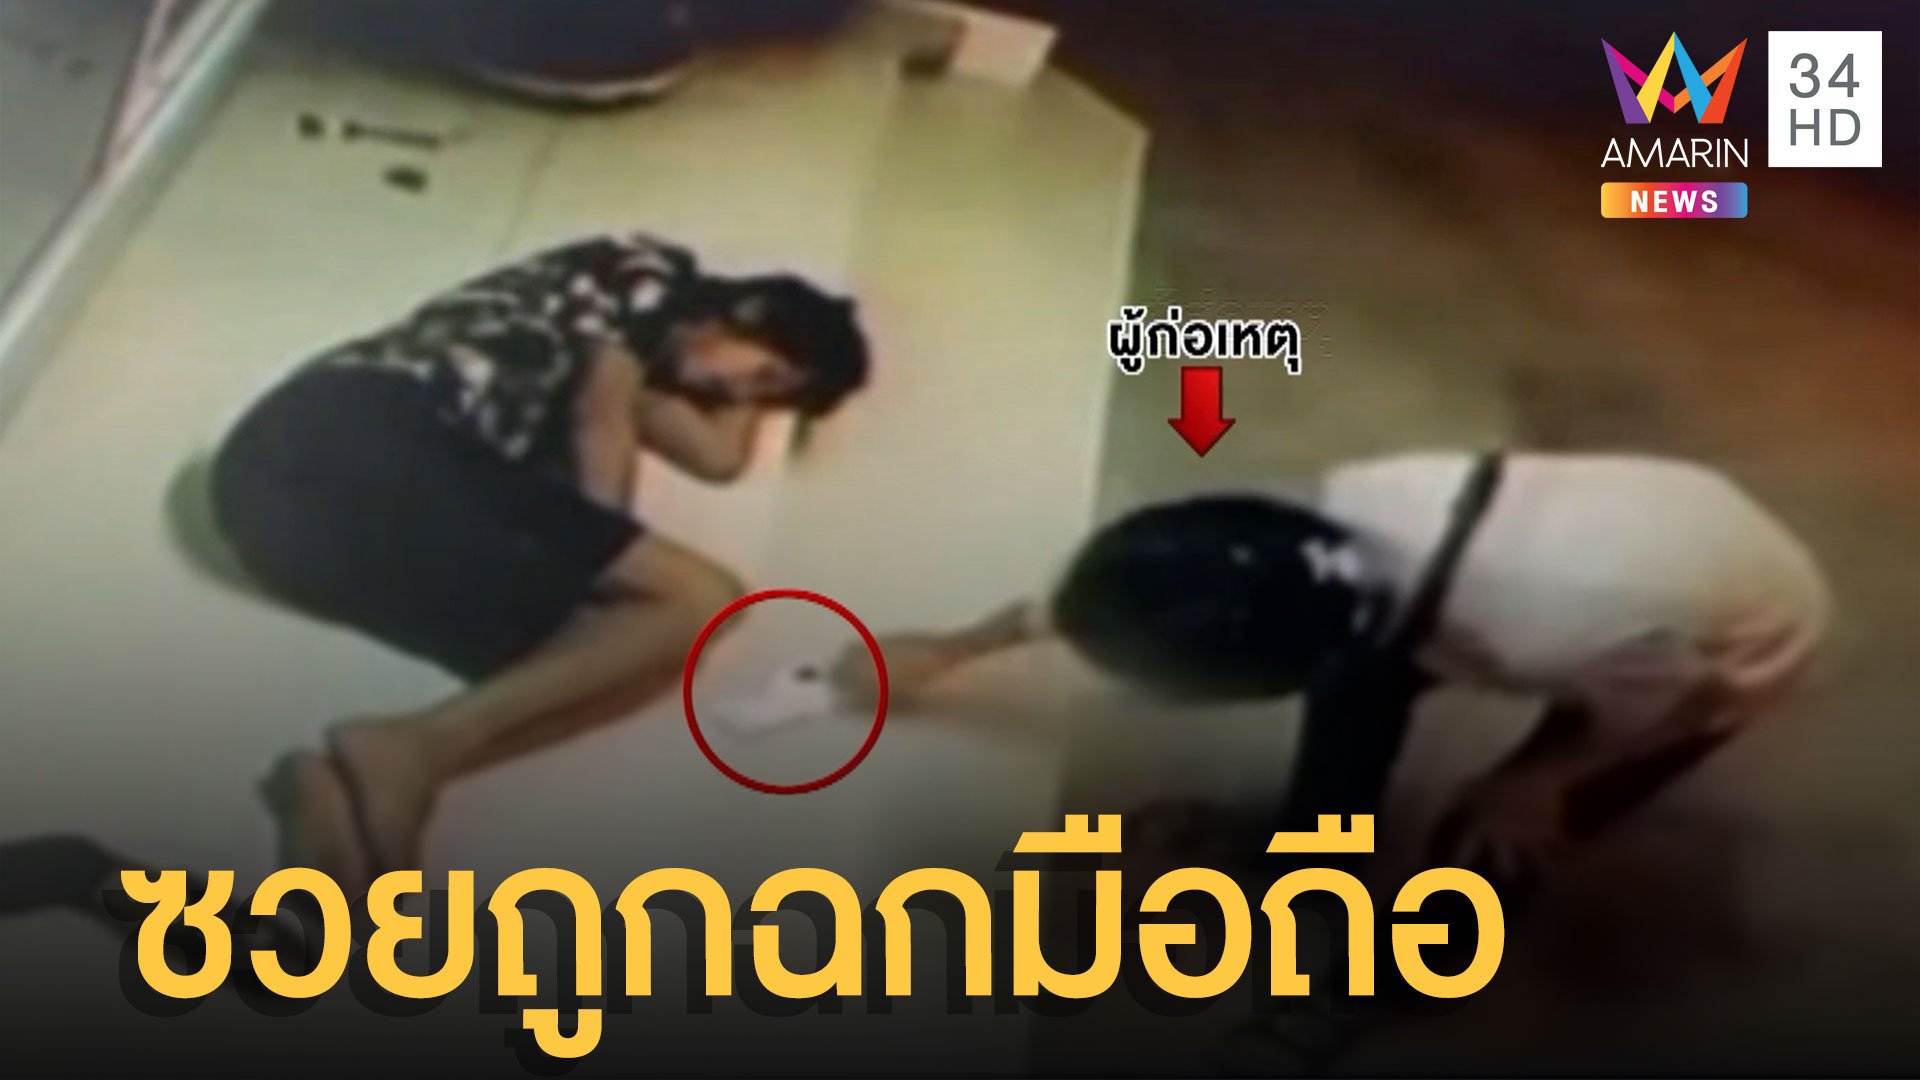 หนุ่มเมาเมียไม่ให้เข้าห้อง นอนหน้าหอ ซวยซ้ำถูกฉกมือถือ | ข่าวอรุณอมรินทร์ | 22 ก.ค. 65 | AMARIN TVHD34